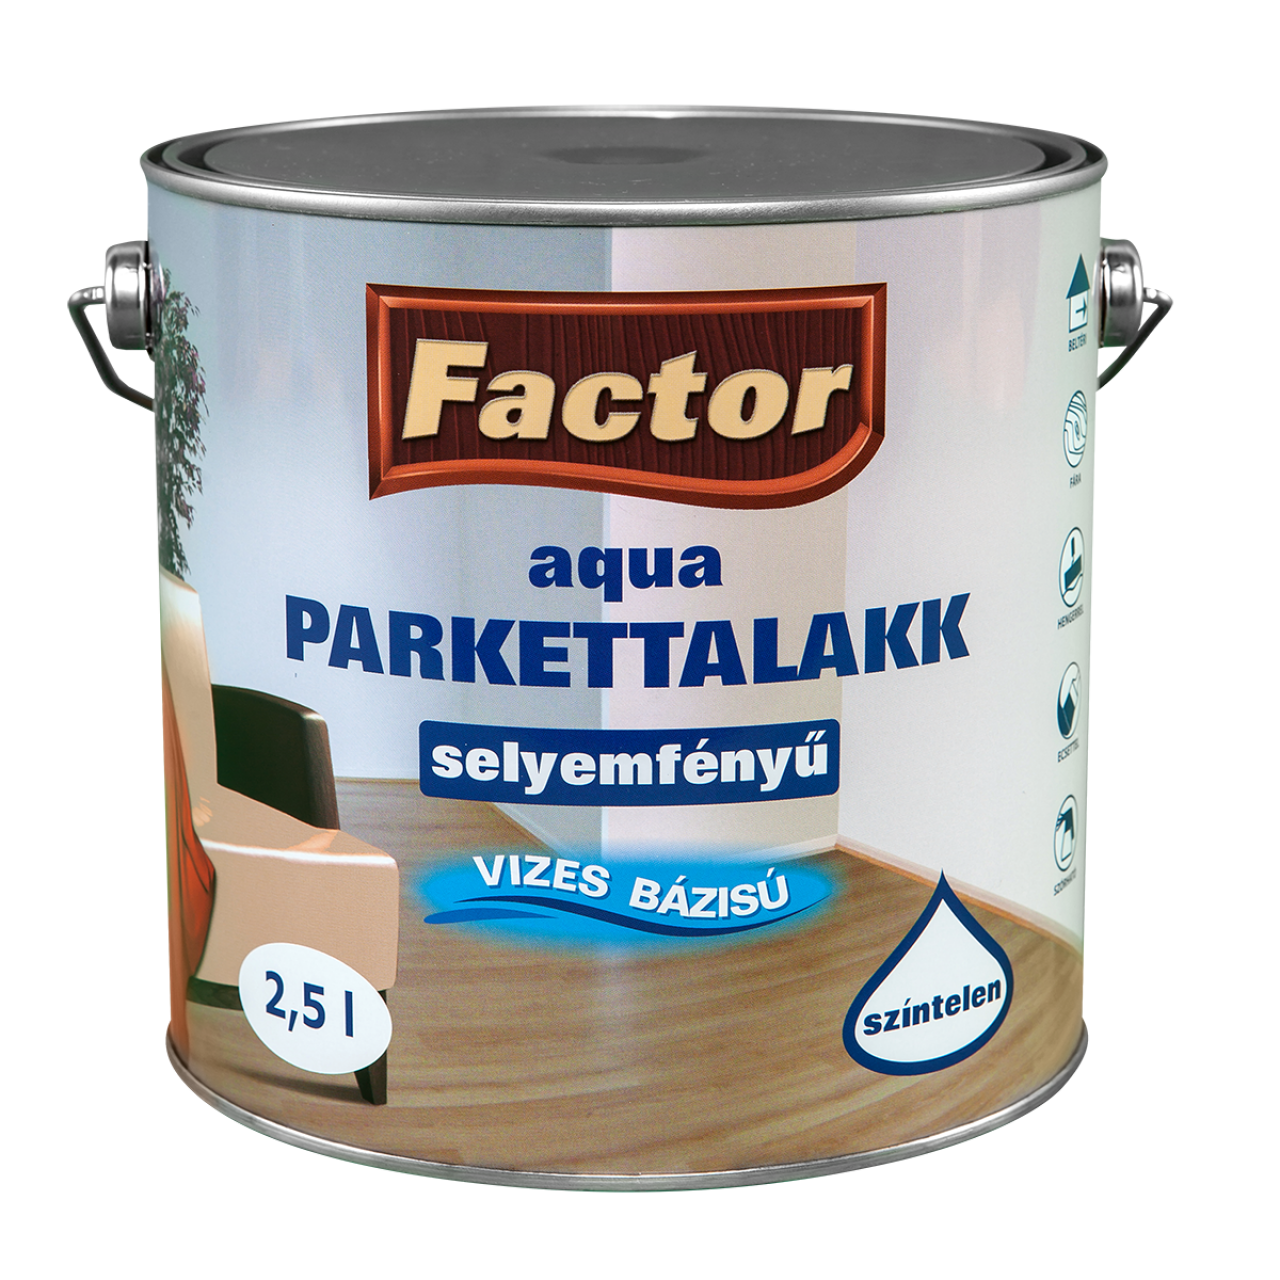 Factor Aqua Parkettalakk selyemfényű 2,5L CH5 (102440)